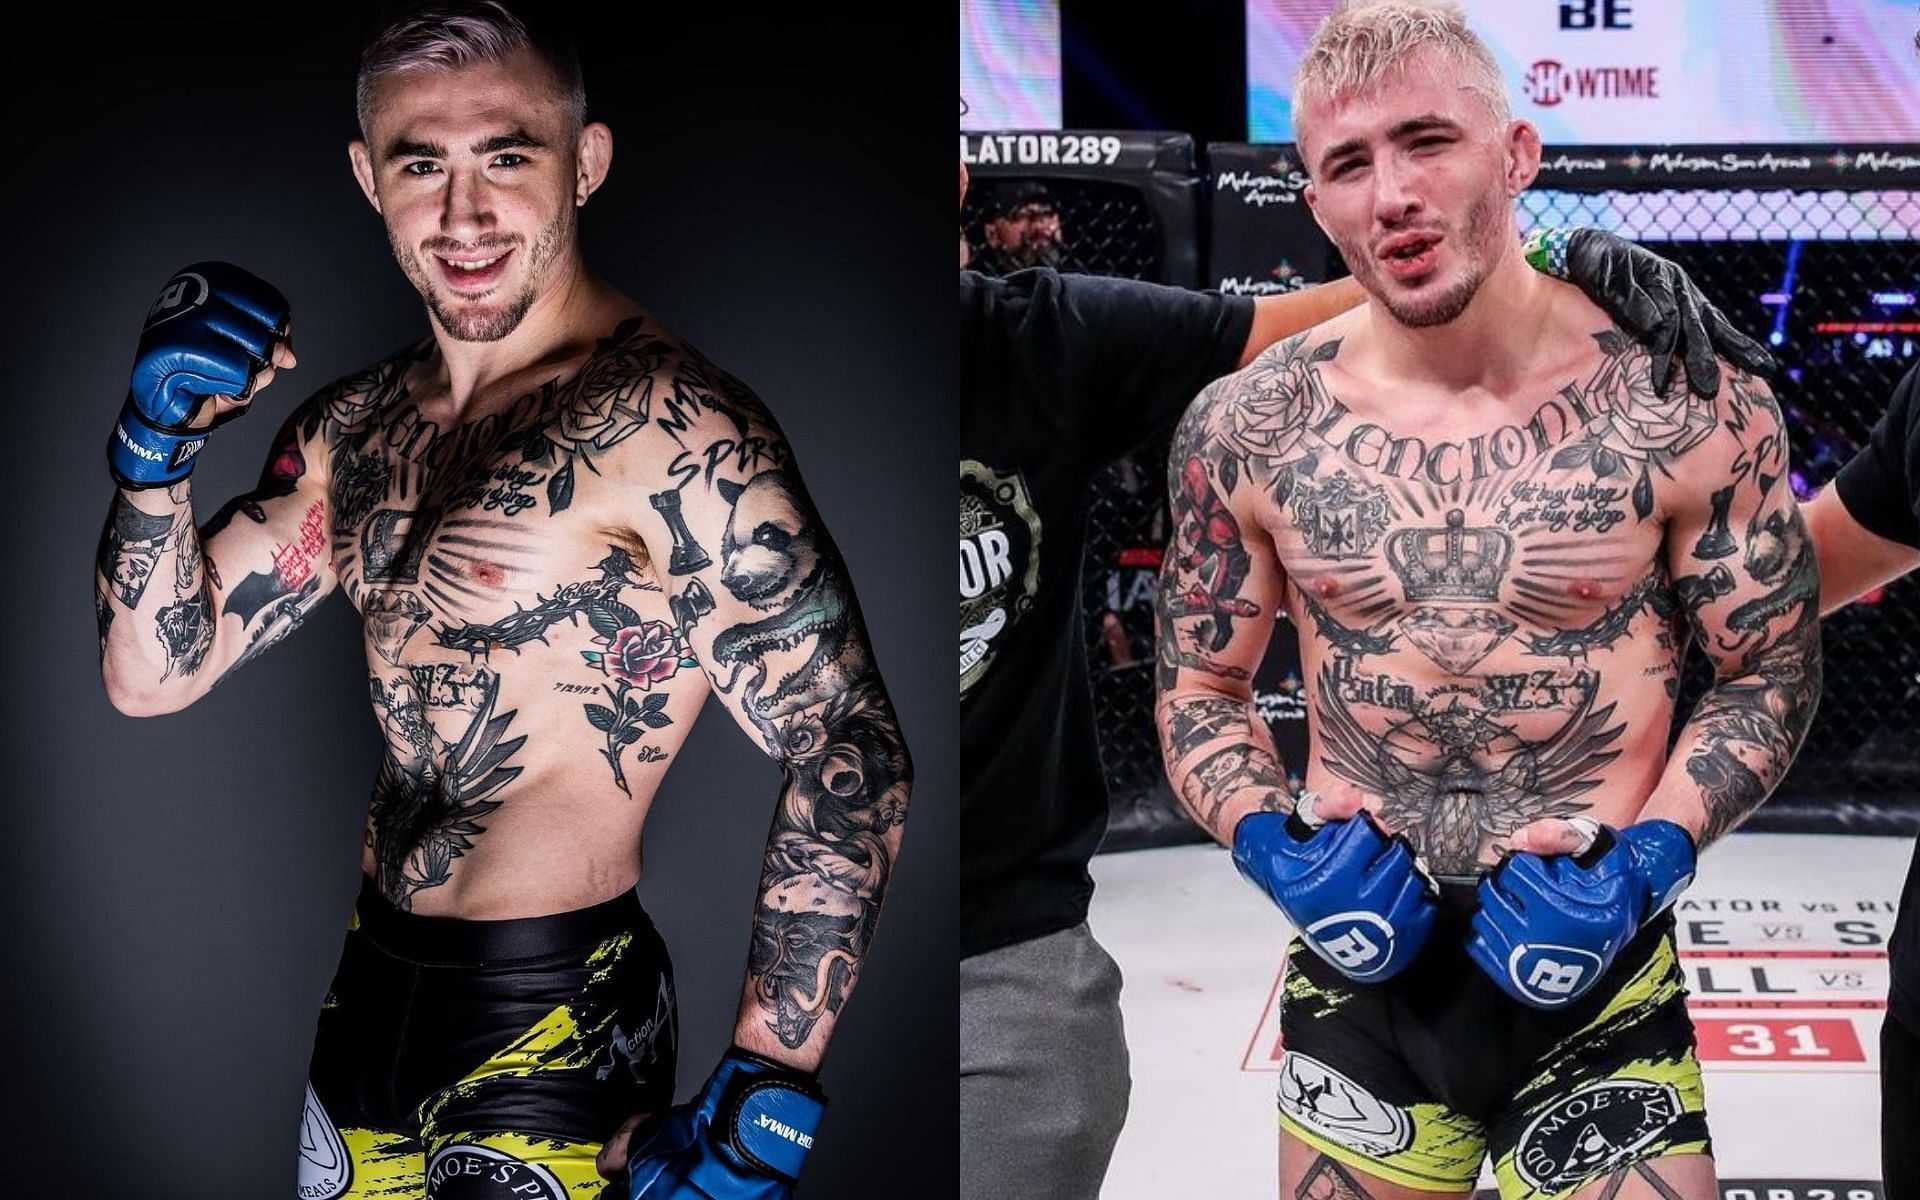 Cris Lencioni (Left); Lencioni in the Bellator MMA cage (Right) [*Image courtesy: left and right images via @crissunshinemma Instagram]